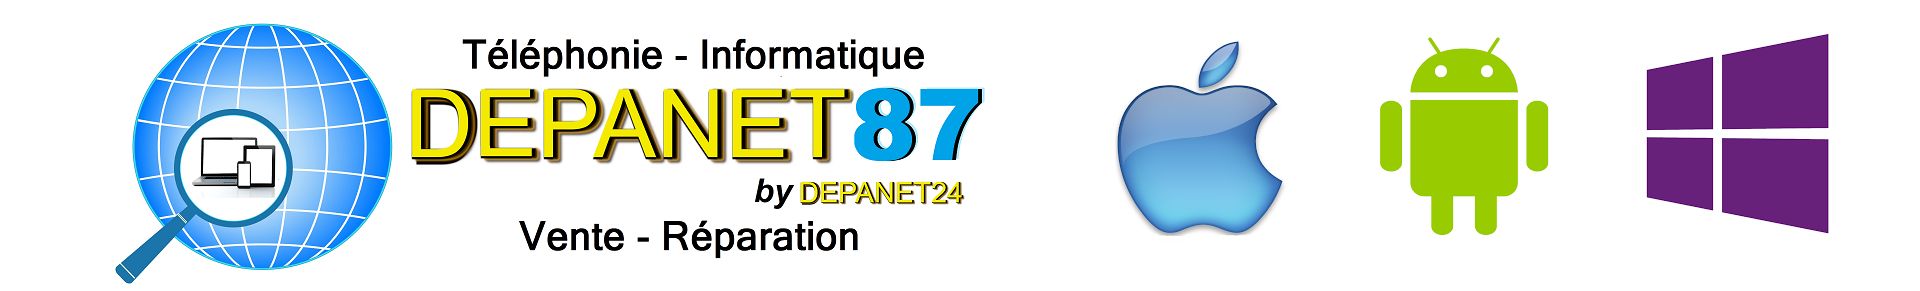 Logo depanet 87